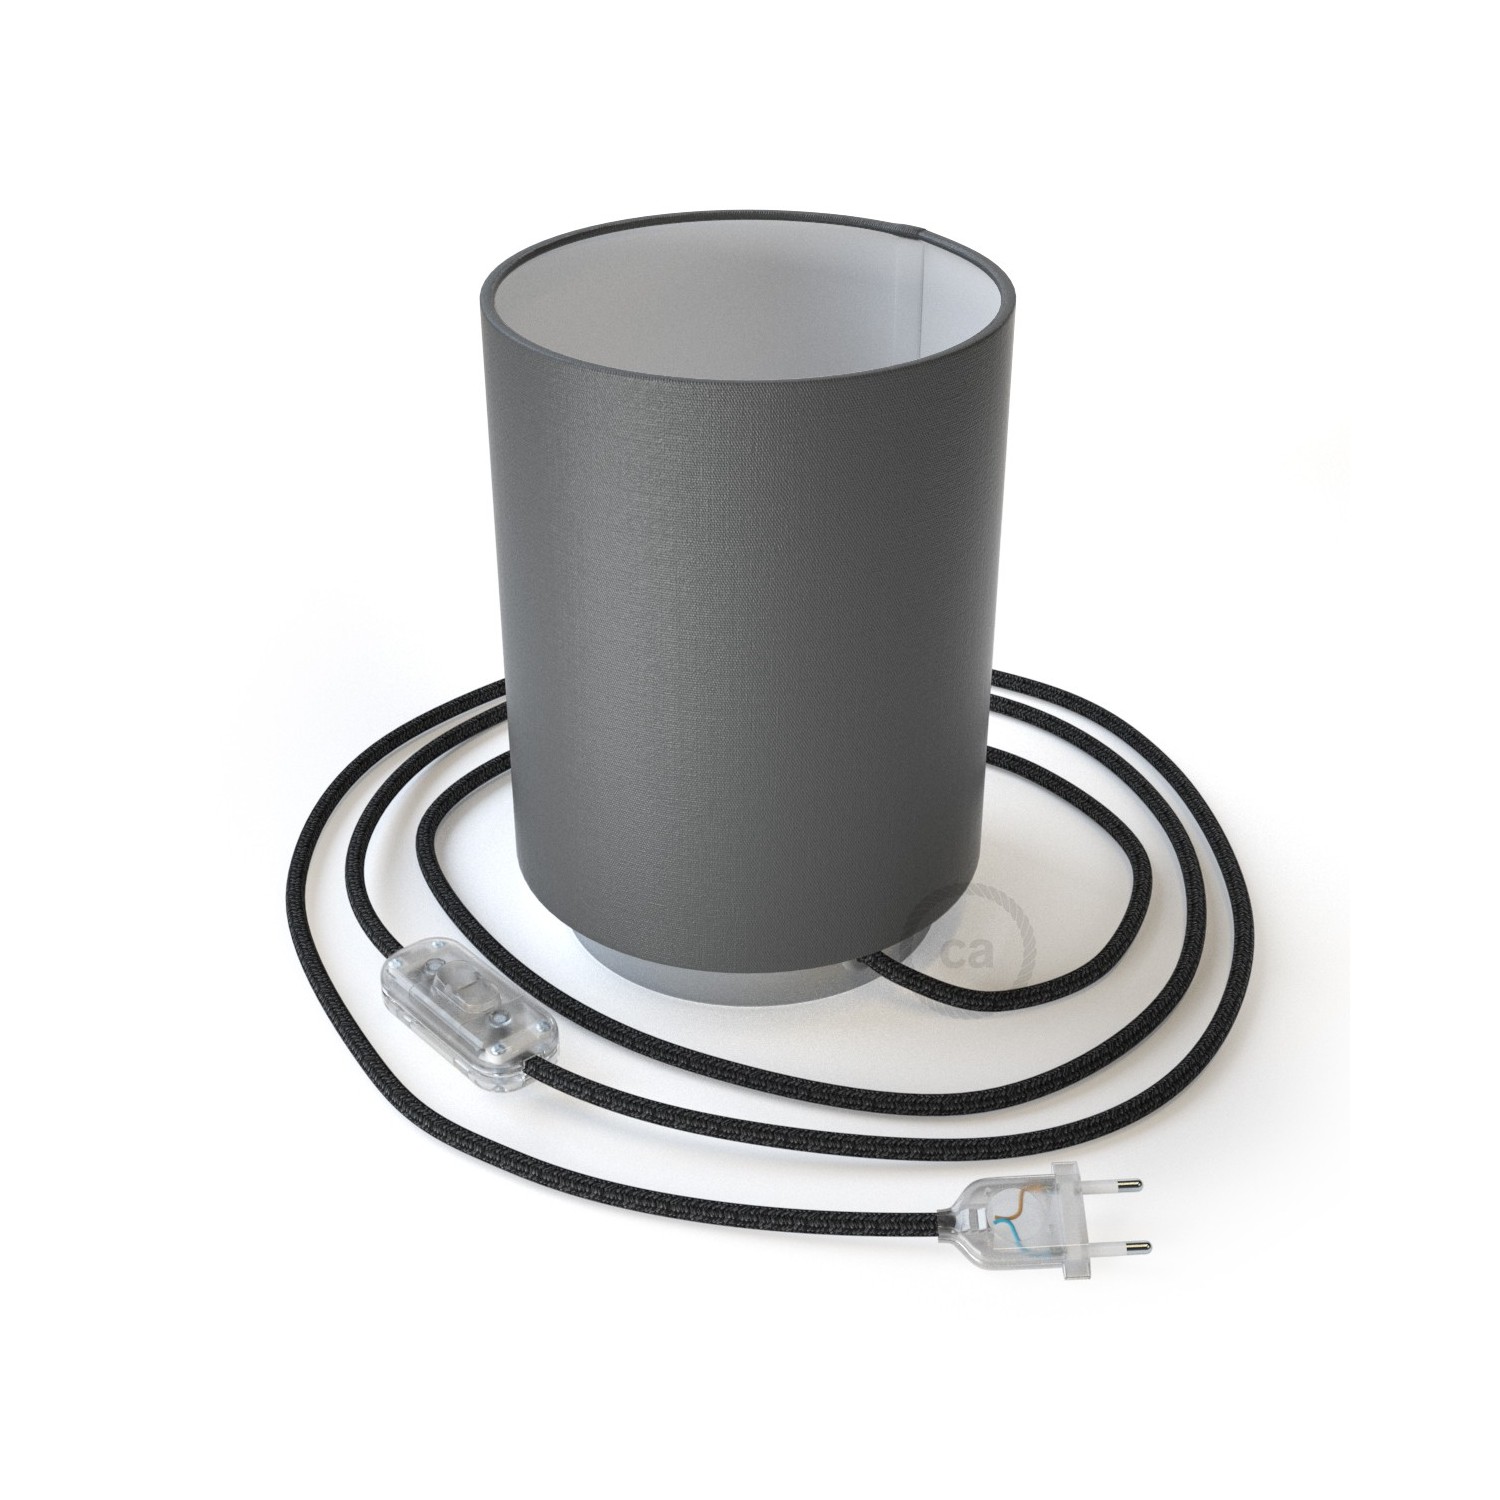 Posaluce i metall med Cilindro Antracitgrå lampskärm, komplett med textilkabel, sladdströmbrytare och 2-polig stickpropp.